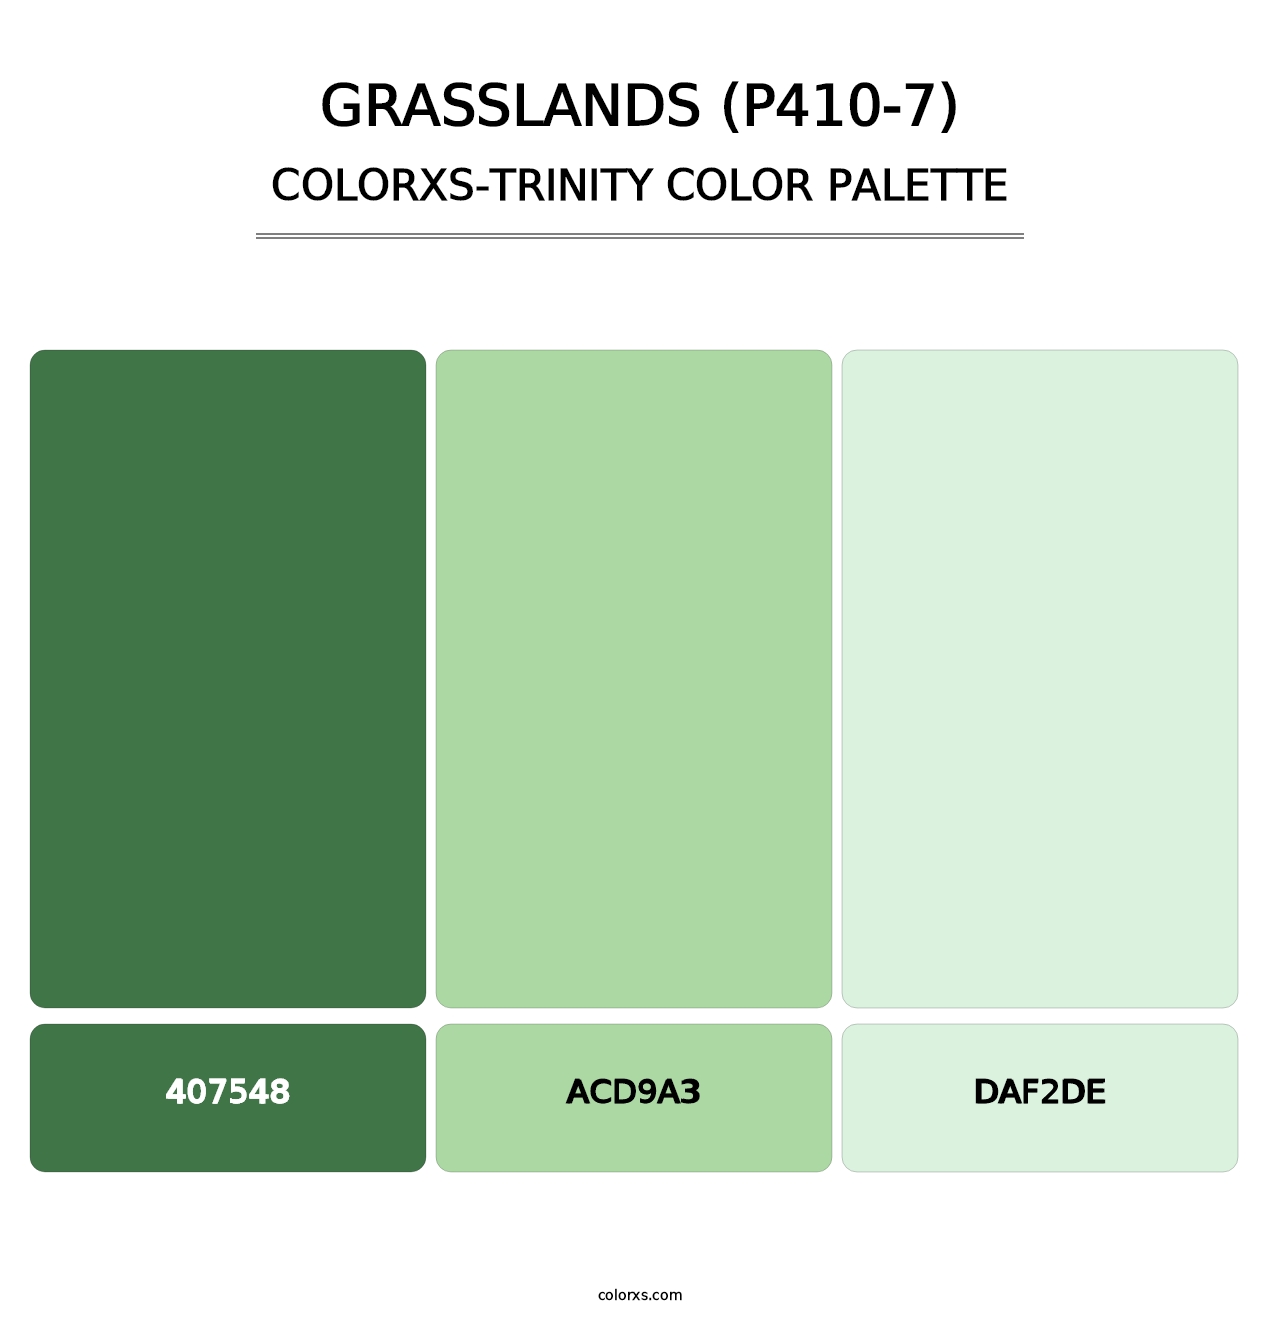 Grasslands (P410-7) - Colorxs Trinity Palette